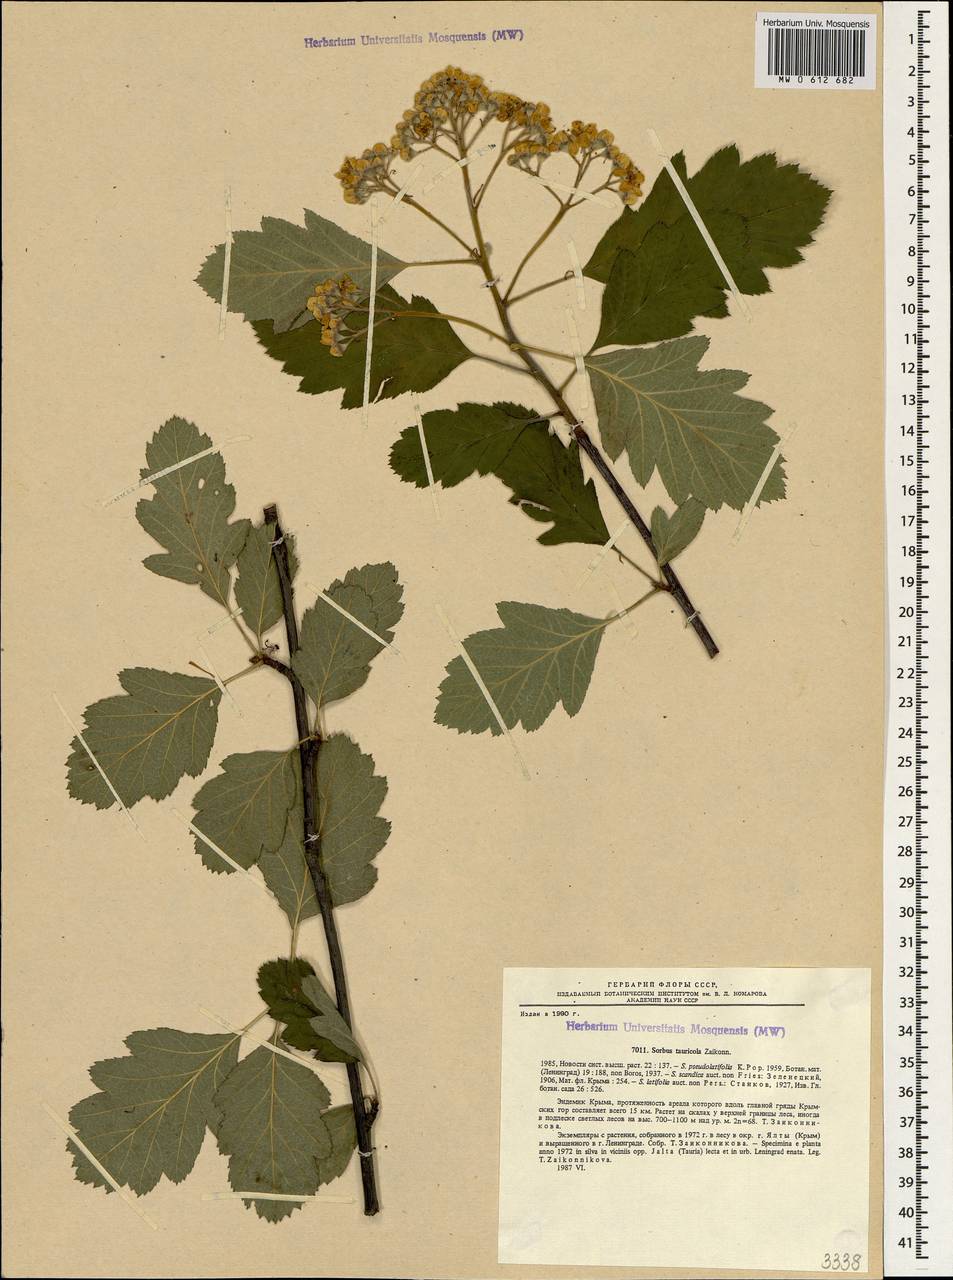 Karpatiosorbus tauricola (Zaik. ex Sennikov) Sennikov & Kurtto, Crimea (KRYM) (Russia)